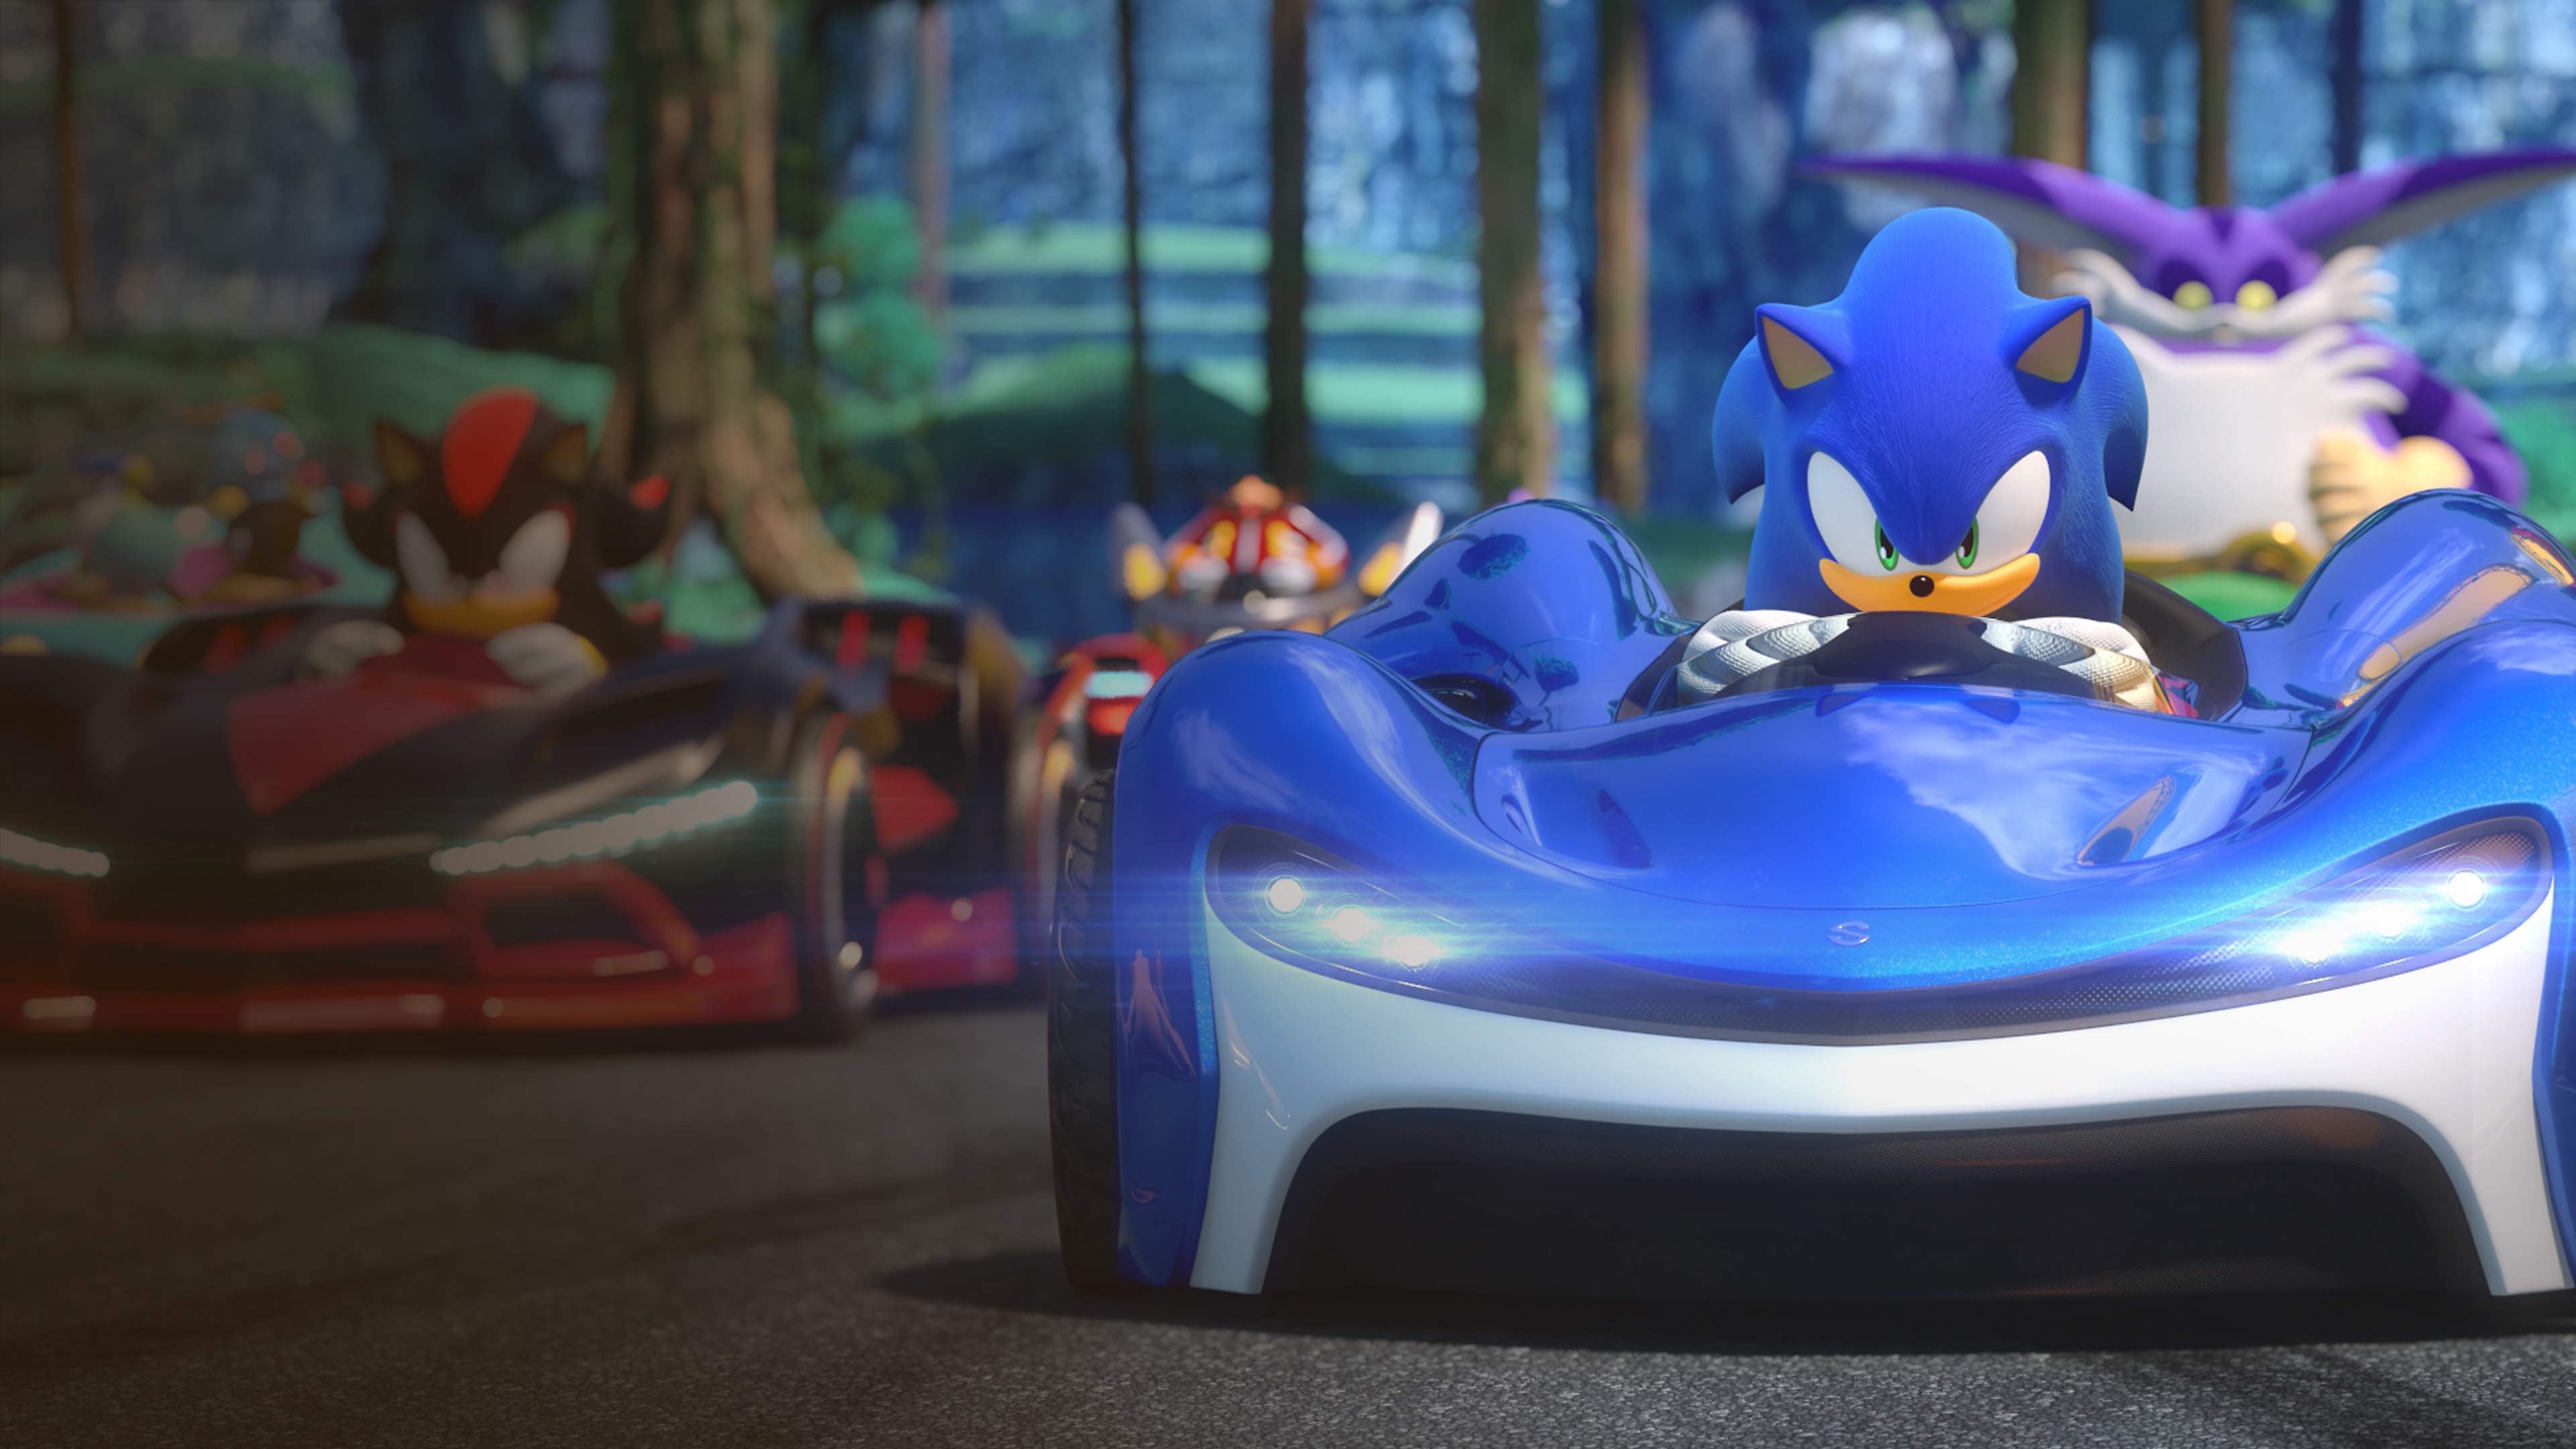 Capture d'écran de Team Sonic Racing montrant le personnage de Sonic se préparant pour la course